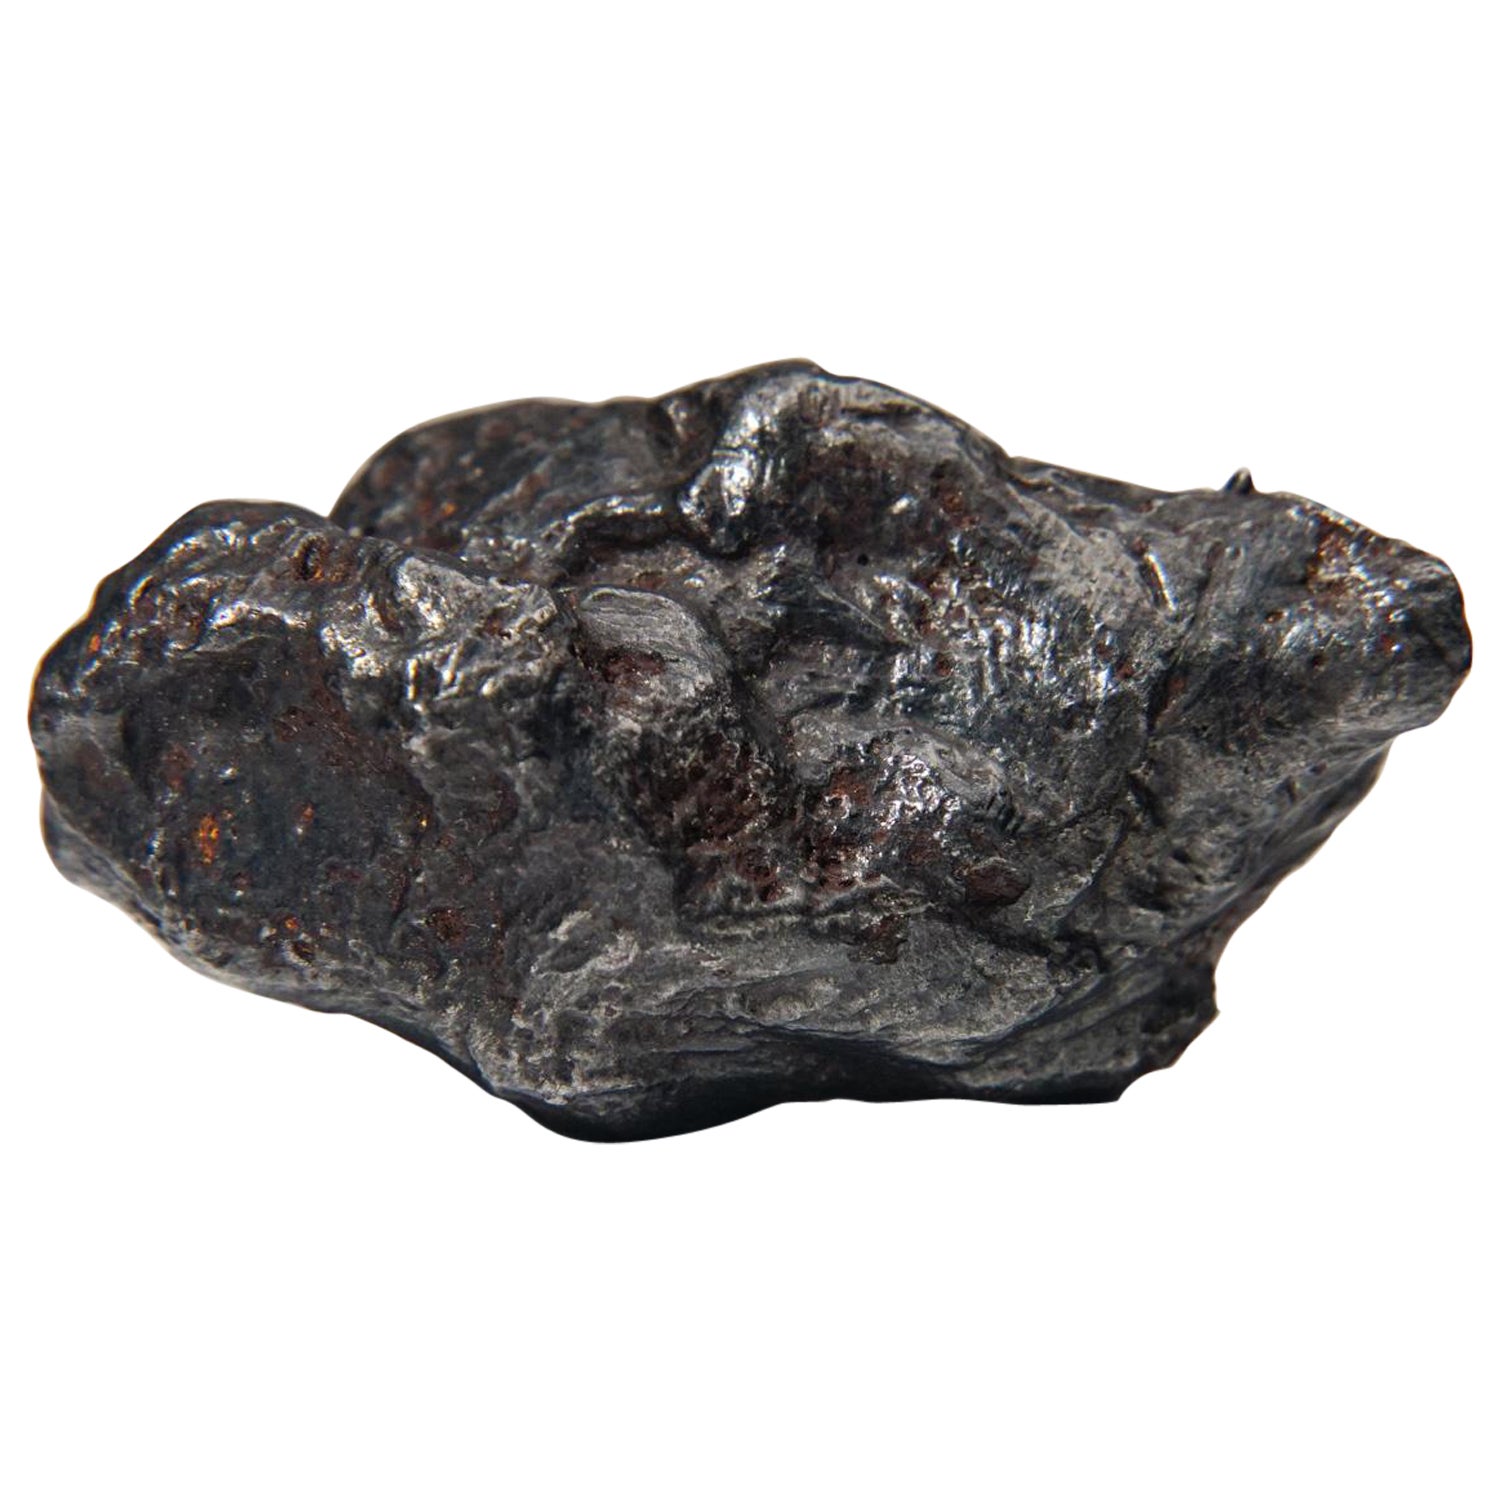 Véritable météorite Sikhote-Alin sur Stand Acrylique (99.5 grammes)